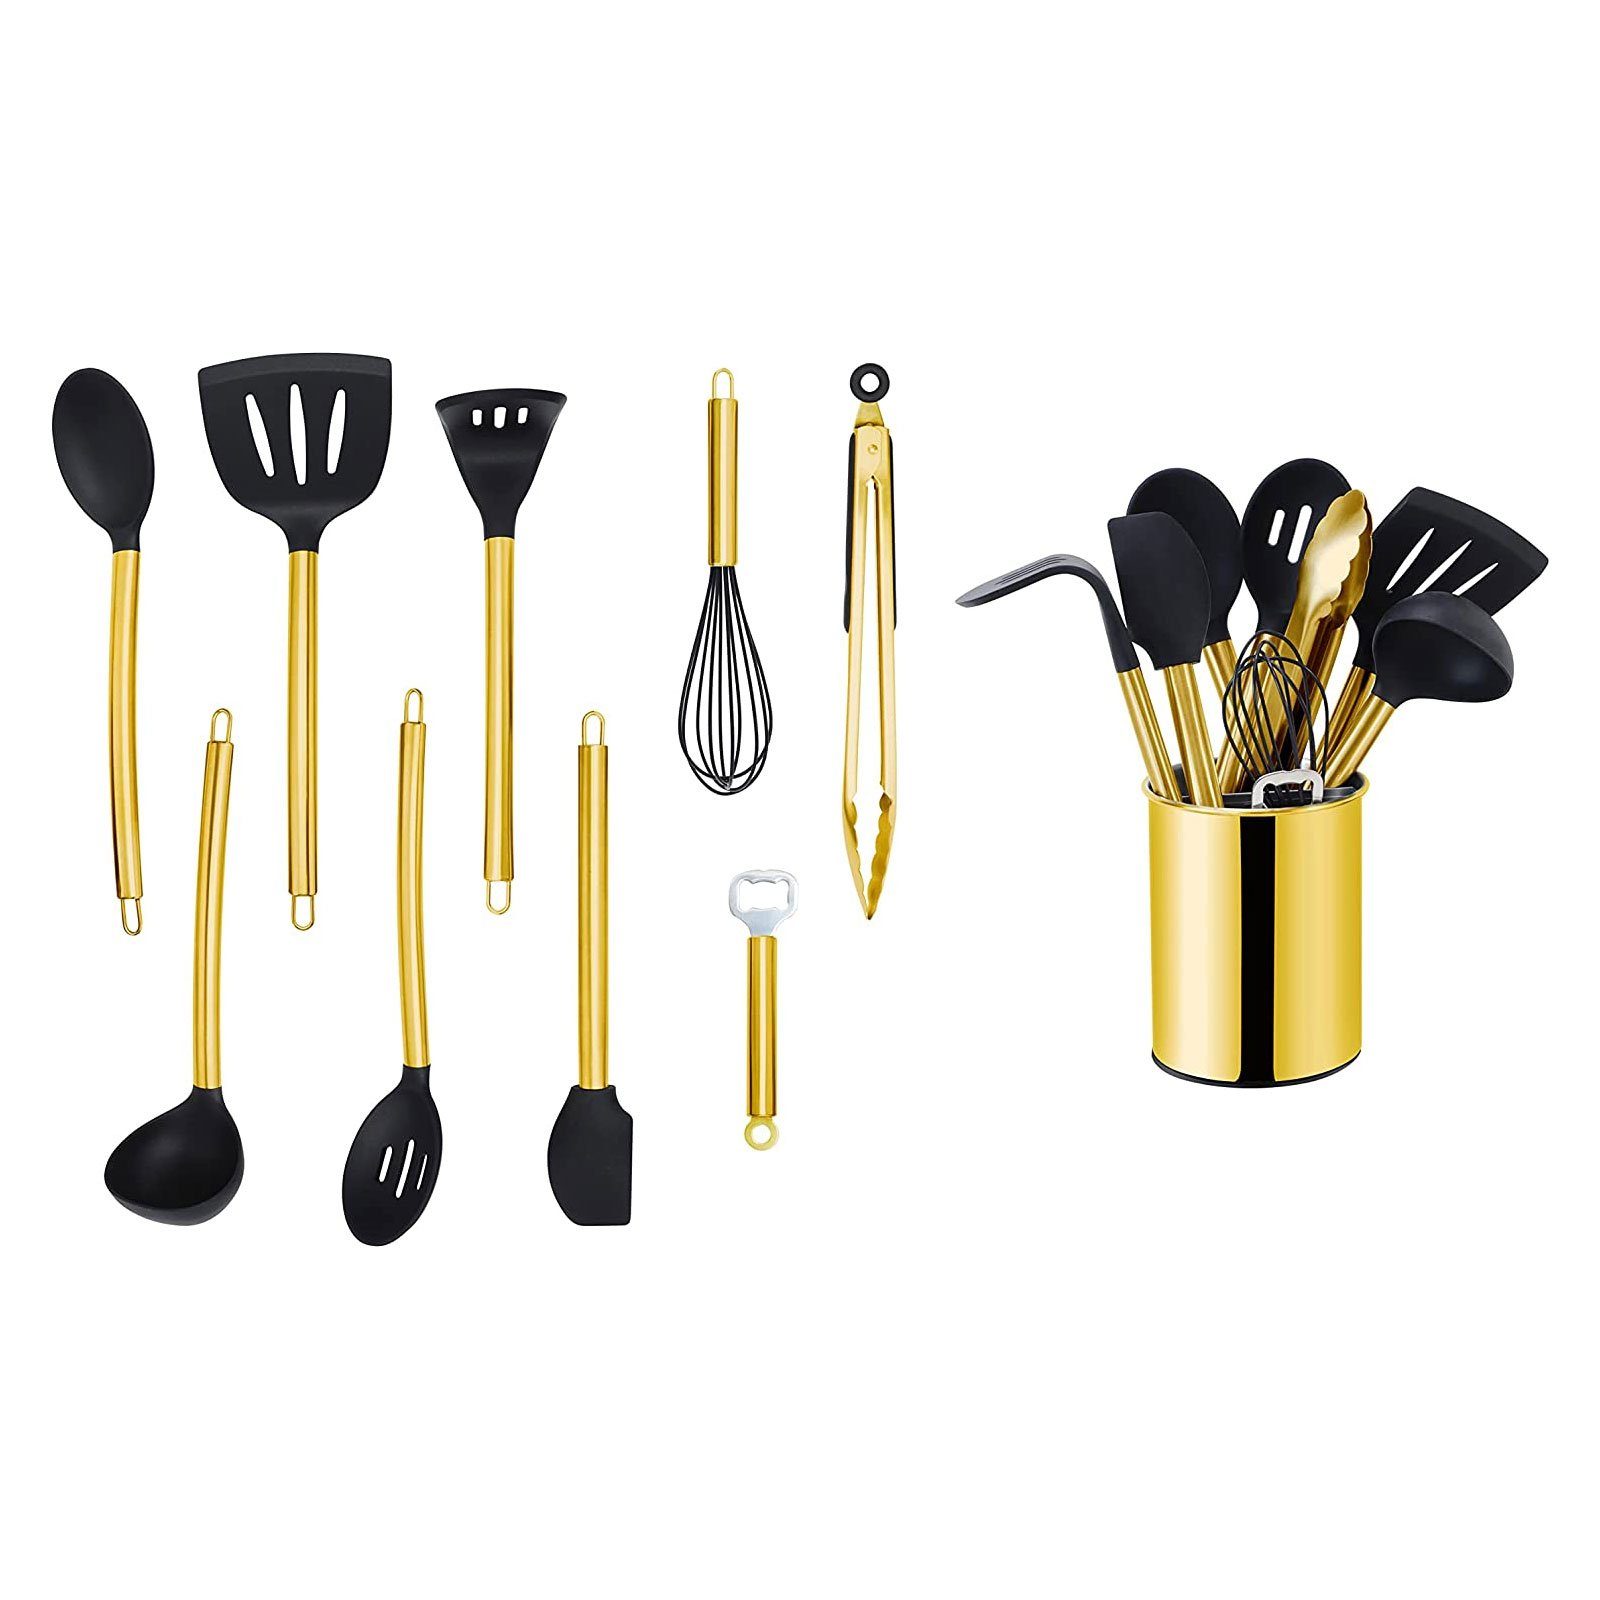 ECHTWERK Küchenorganizer-Set, Kochbesteck mit Edelstahlgriff, Kochset mit Utensilienhalter, Gold